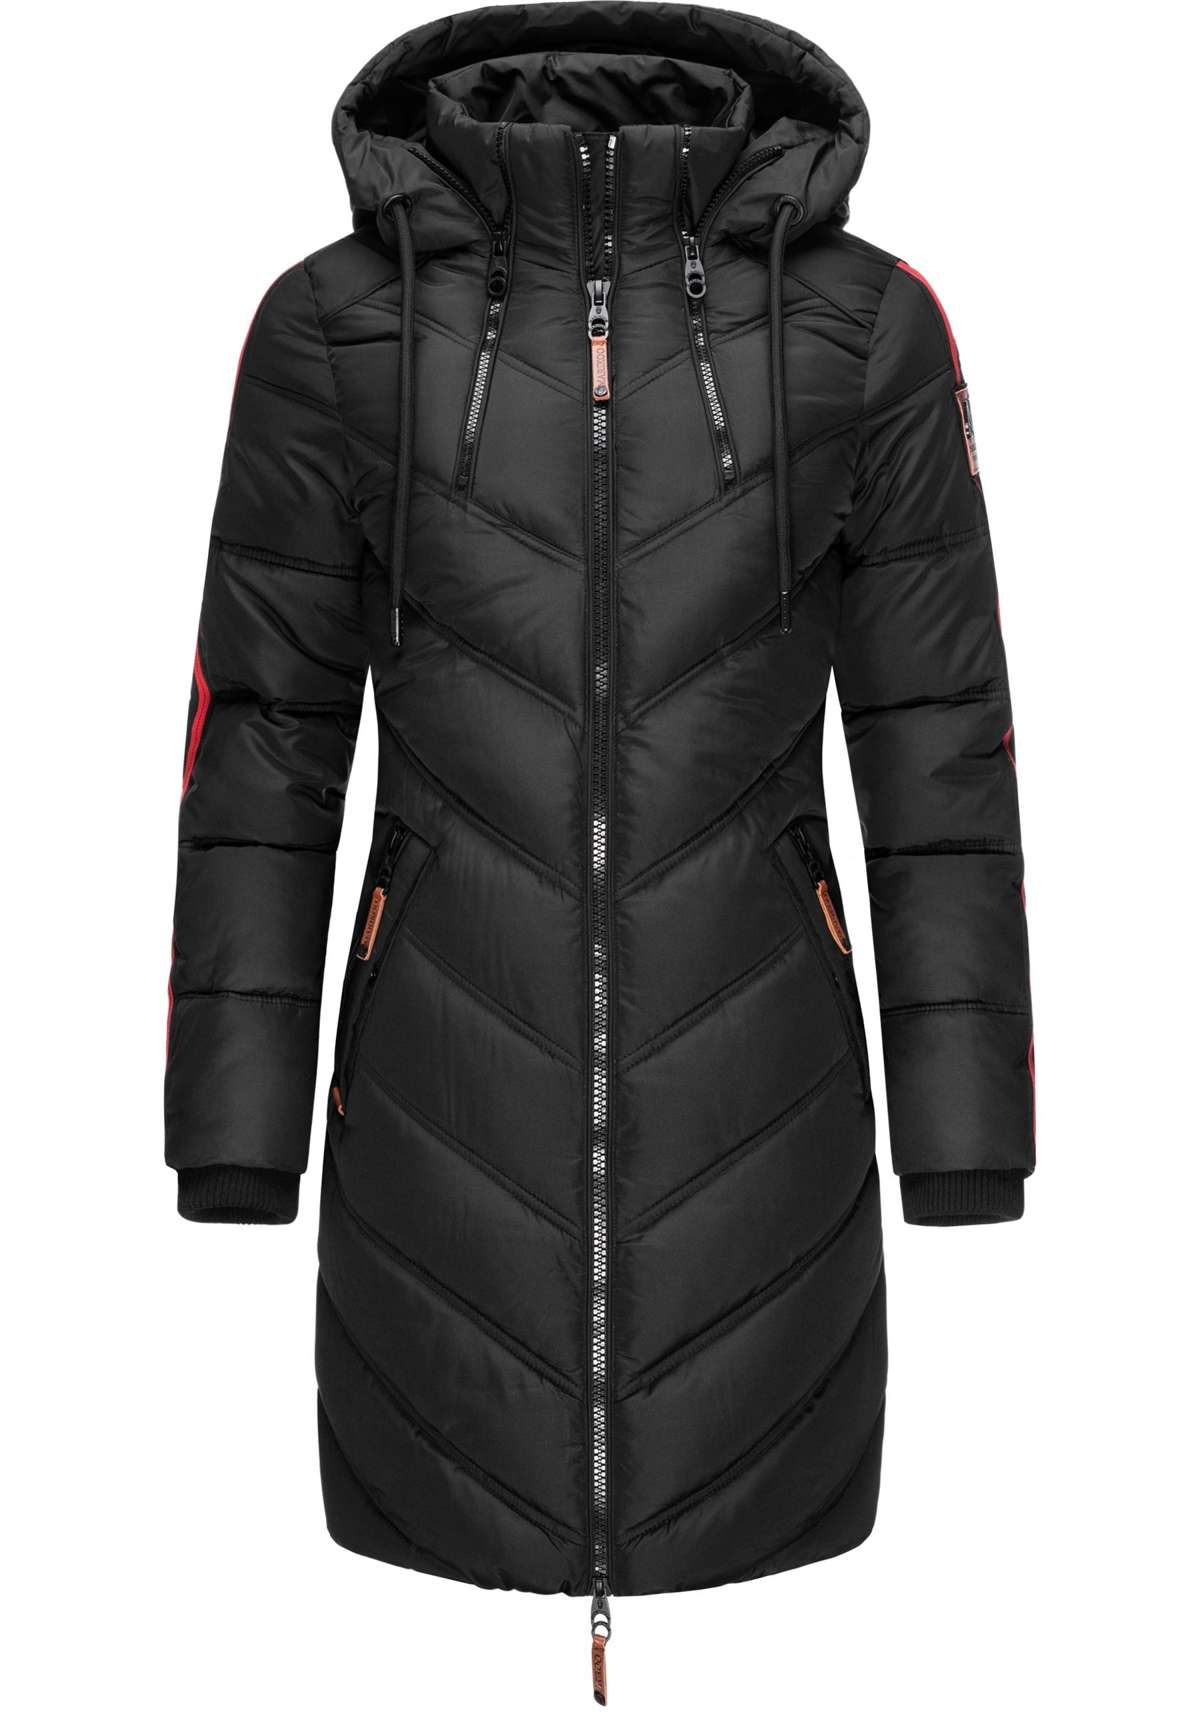 Зимнее пальто, модное женское зимнее стеганое пальто с капюшоном.